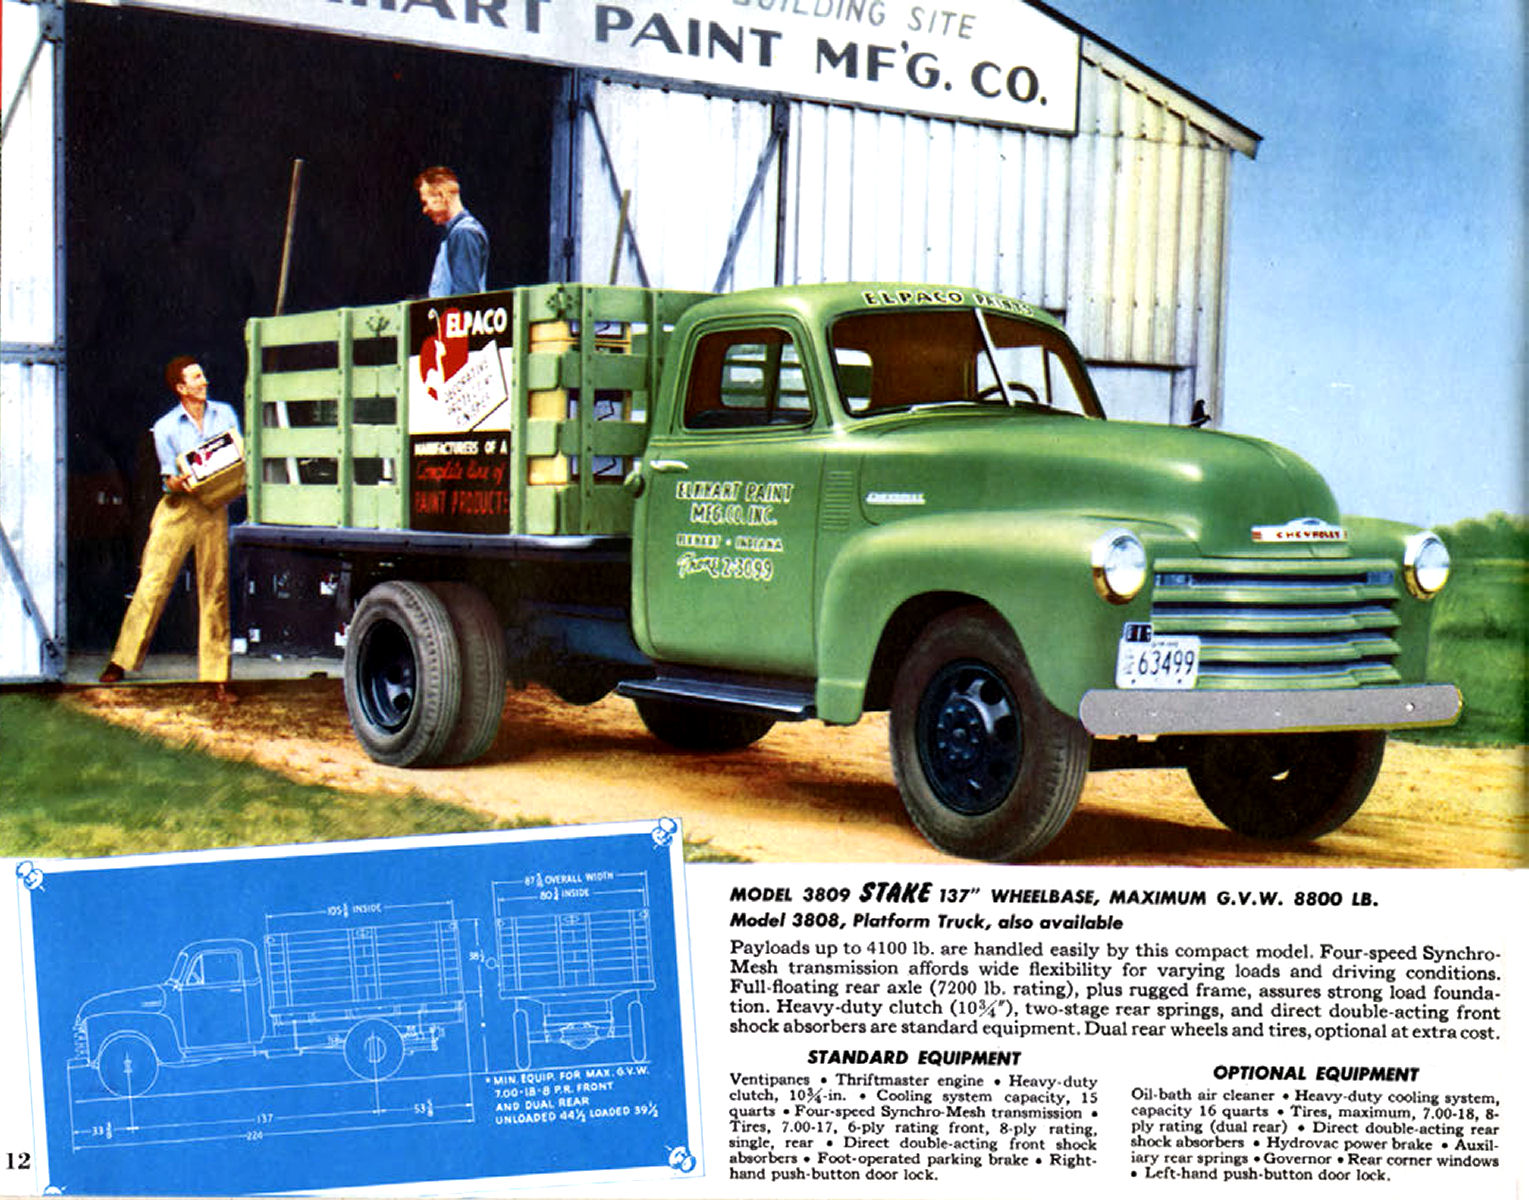 1952 Chevrolet Trucks-12